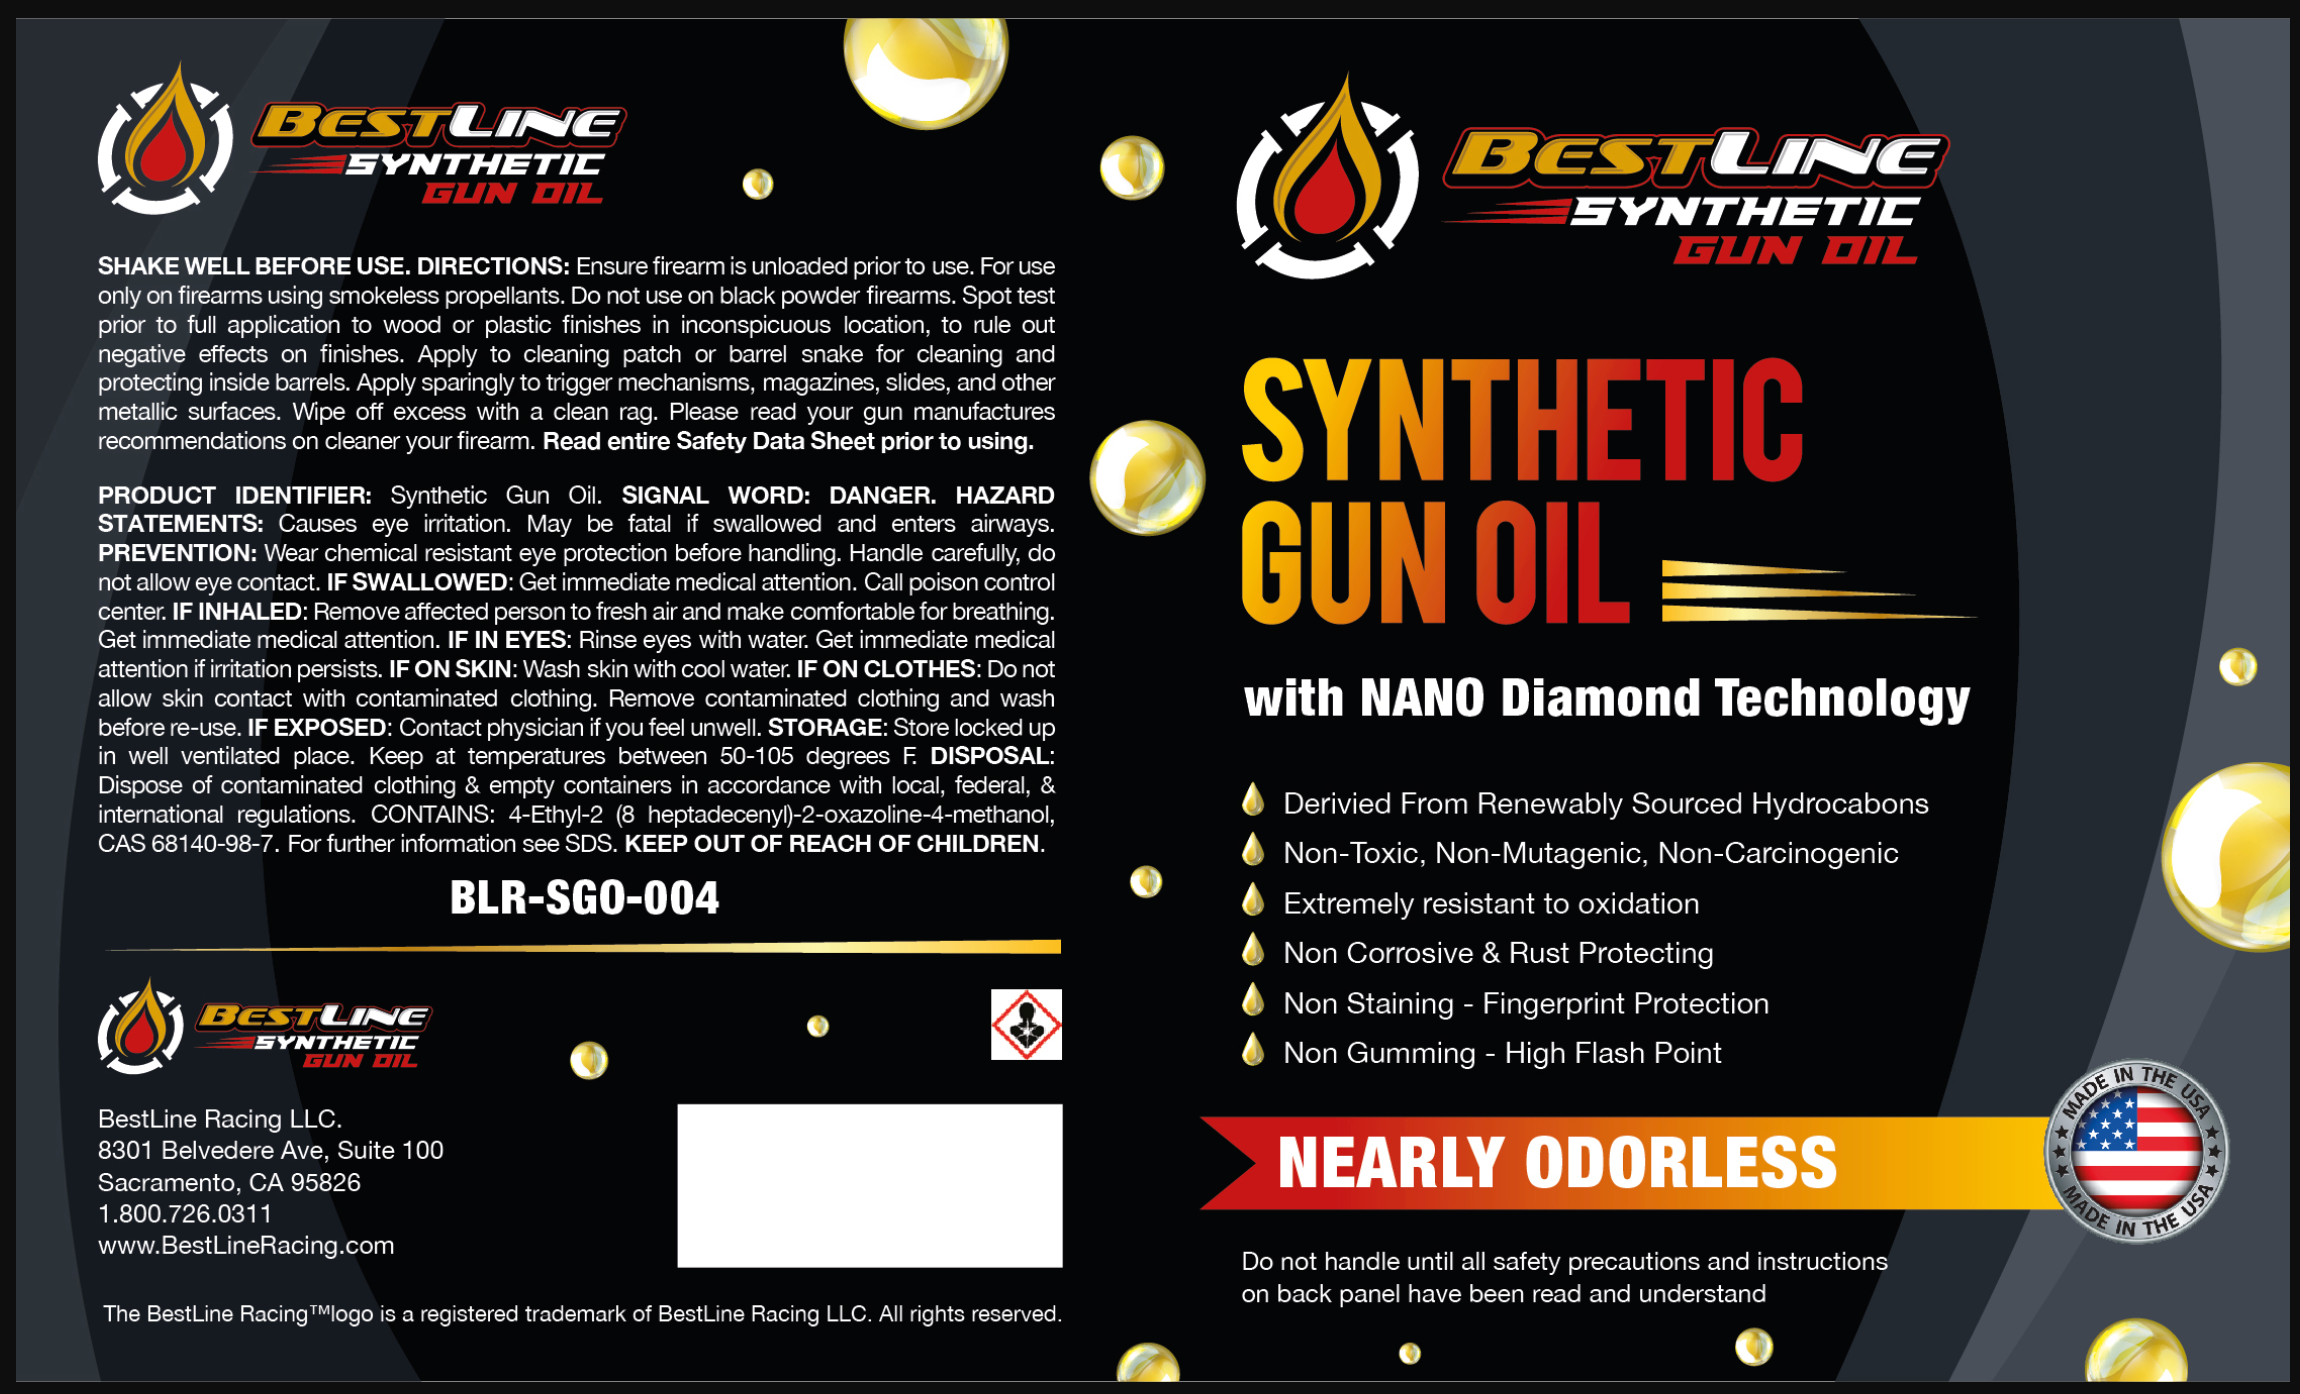 Gun & Reel Lubricant - Maximum Protection